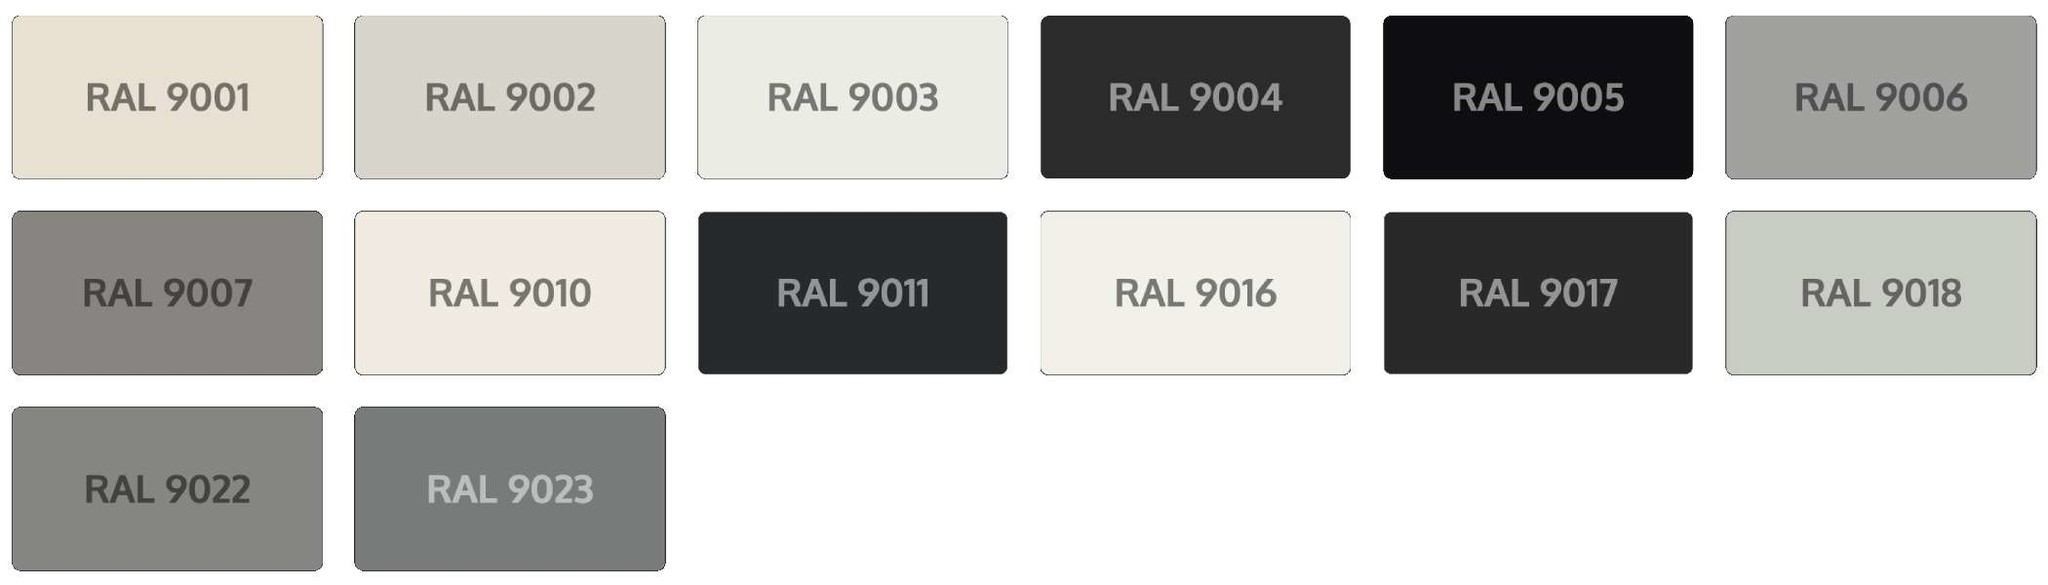 RAL 9003 цвет и 9002